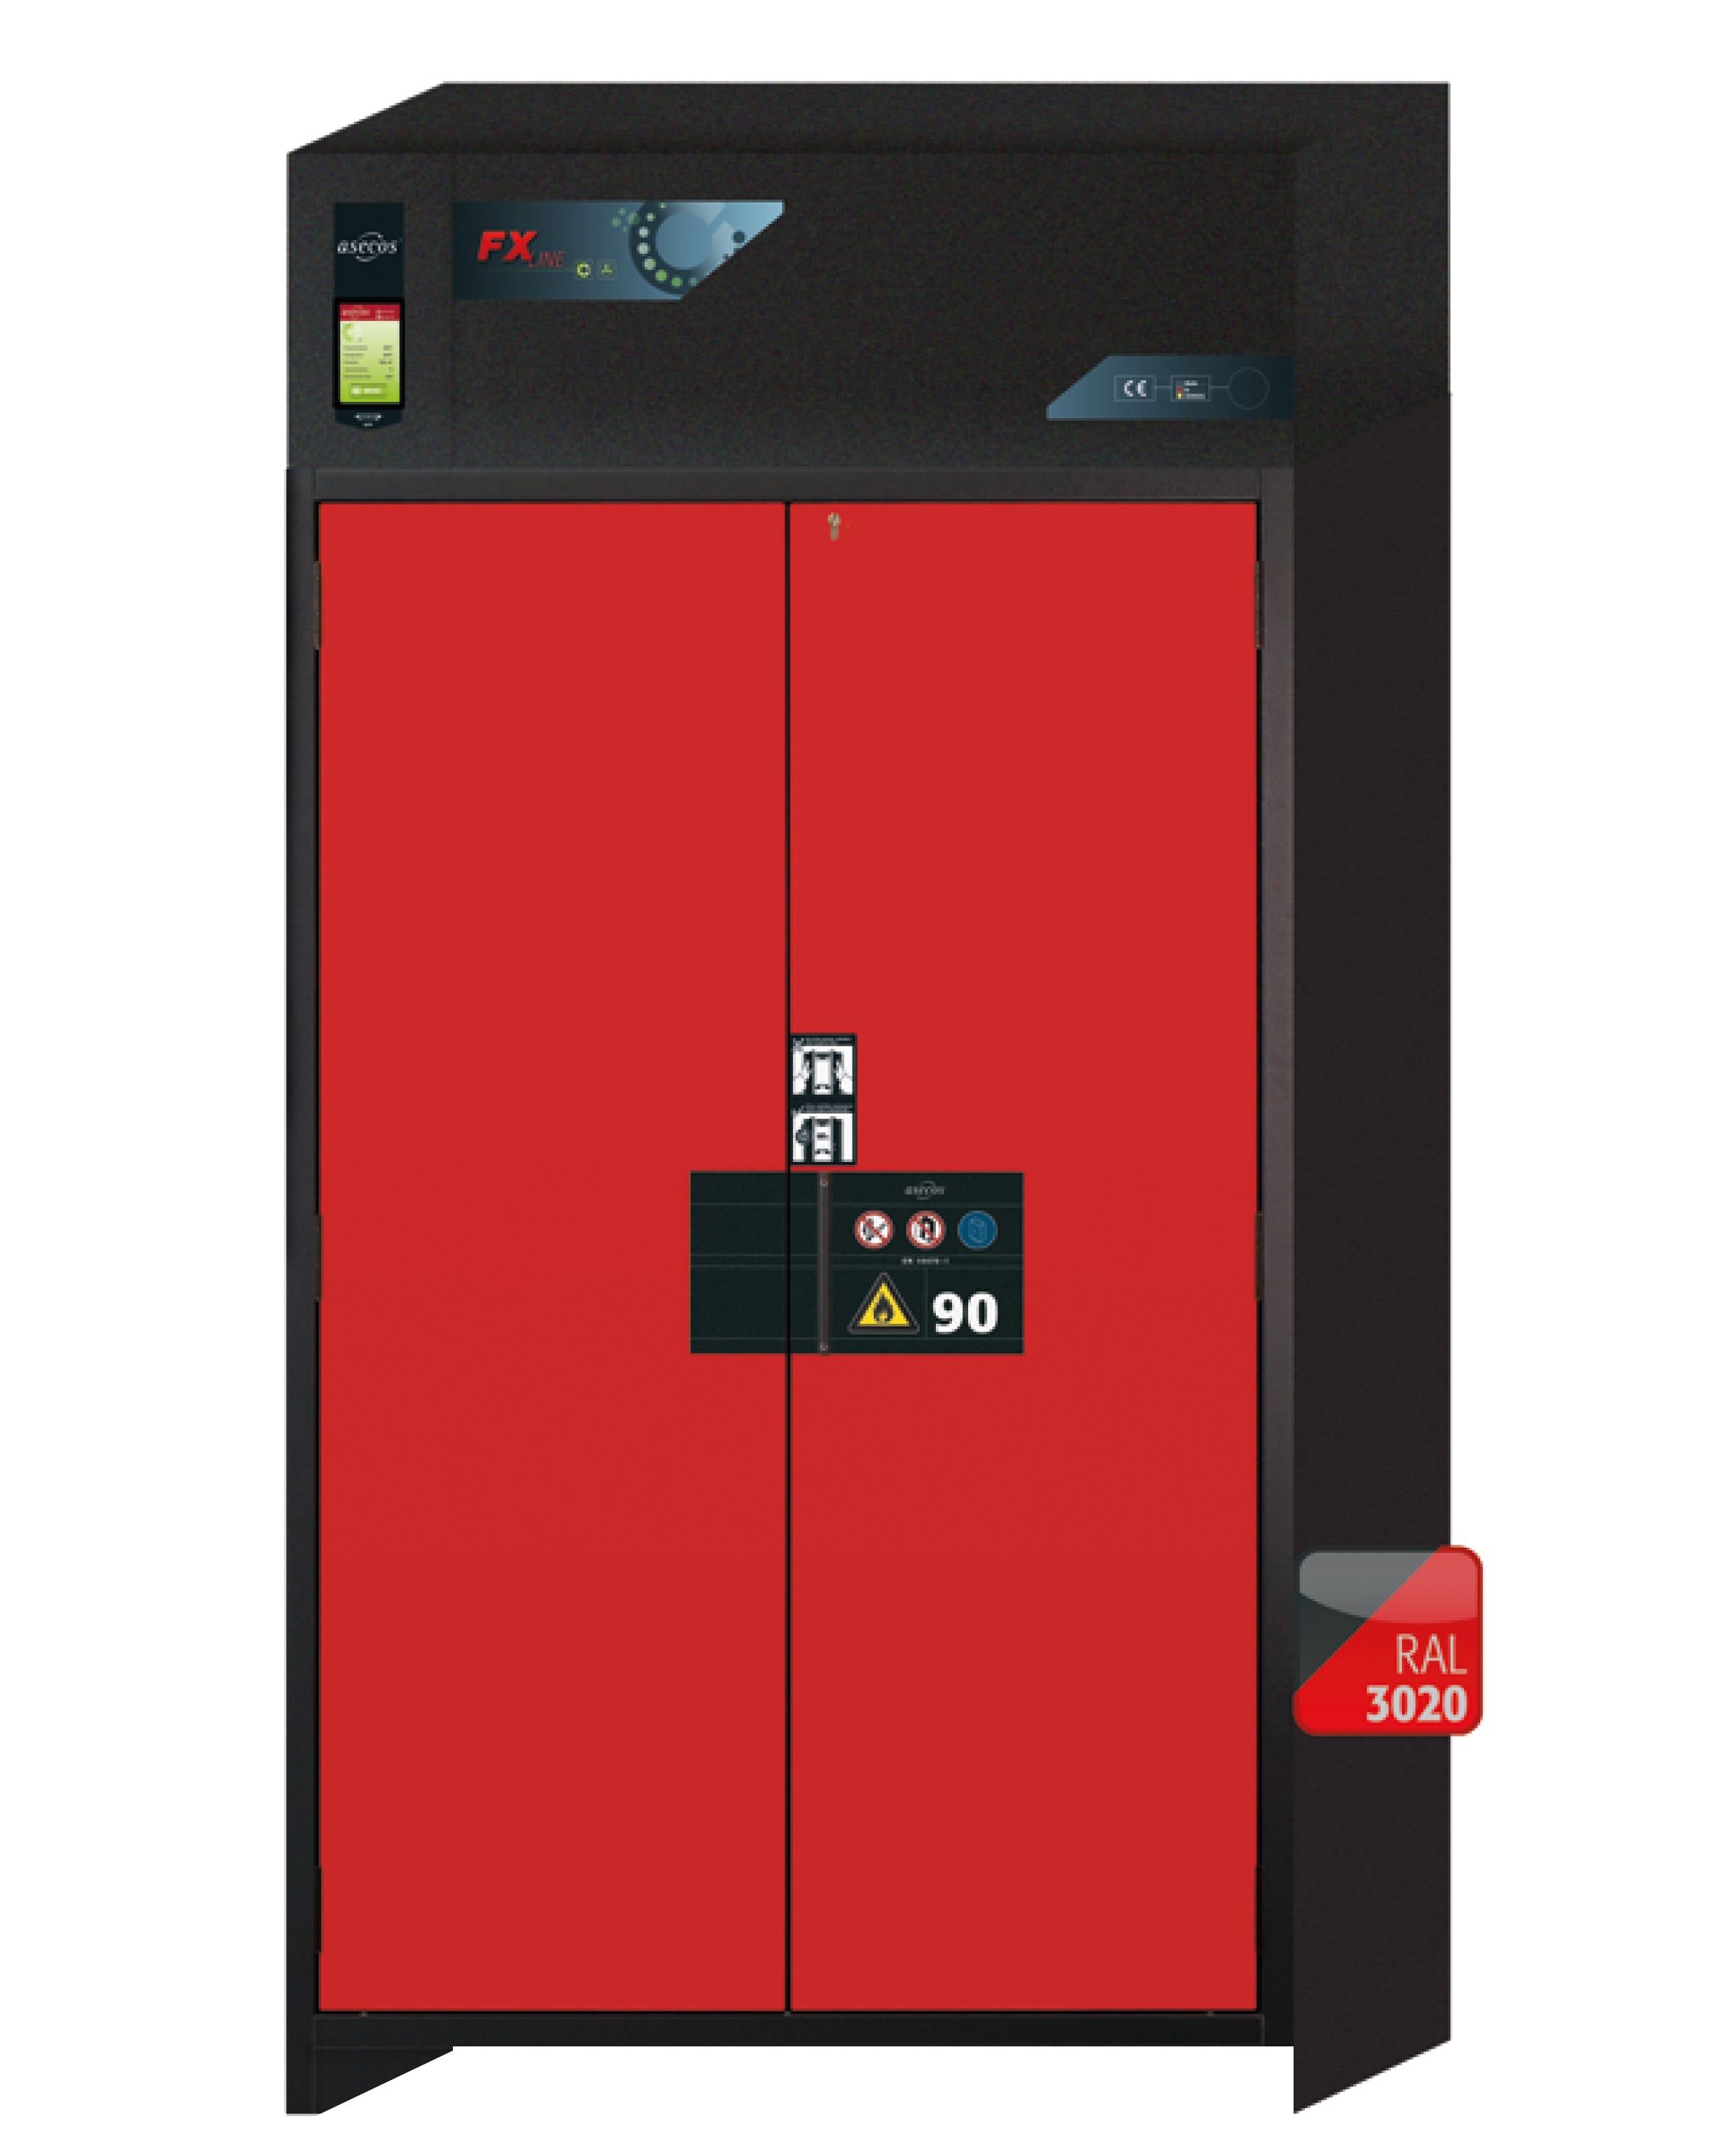 Armoire de filtration d'air de recirculation de type 90 FX-PEGASUS-90 modèle FX90.229.120.WDAC en rouge signalisation RAL 3020 avec 4x étagères standard (acier inoxydable 1.4301)